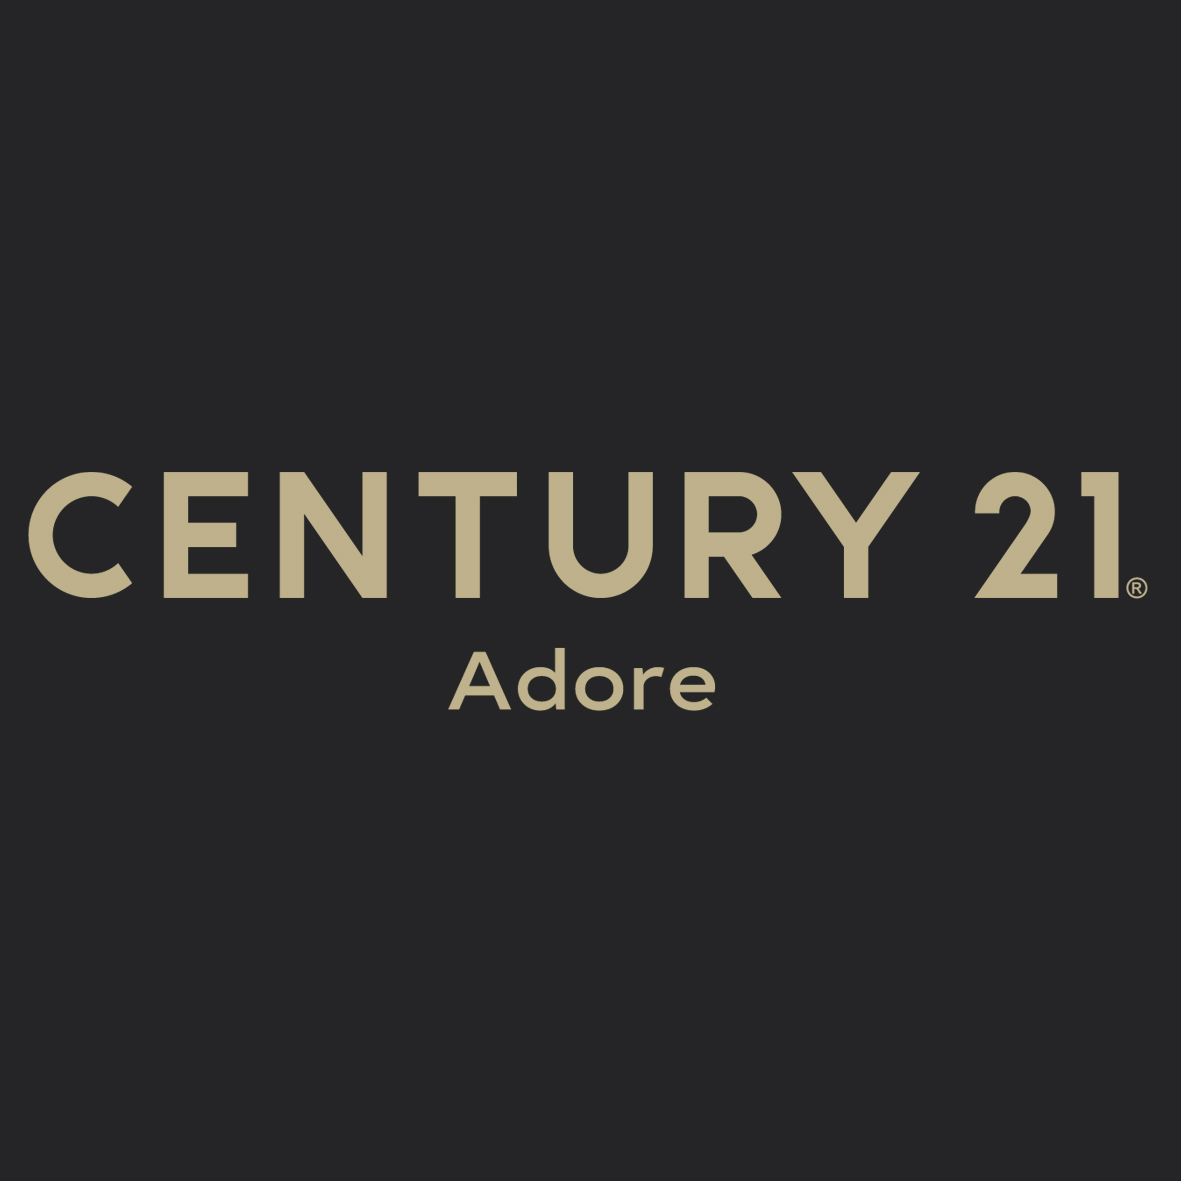 CENTURY 21 Adore